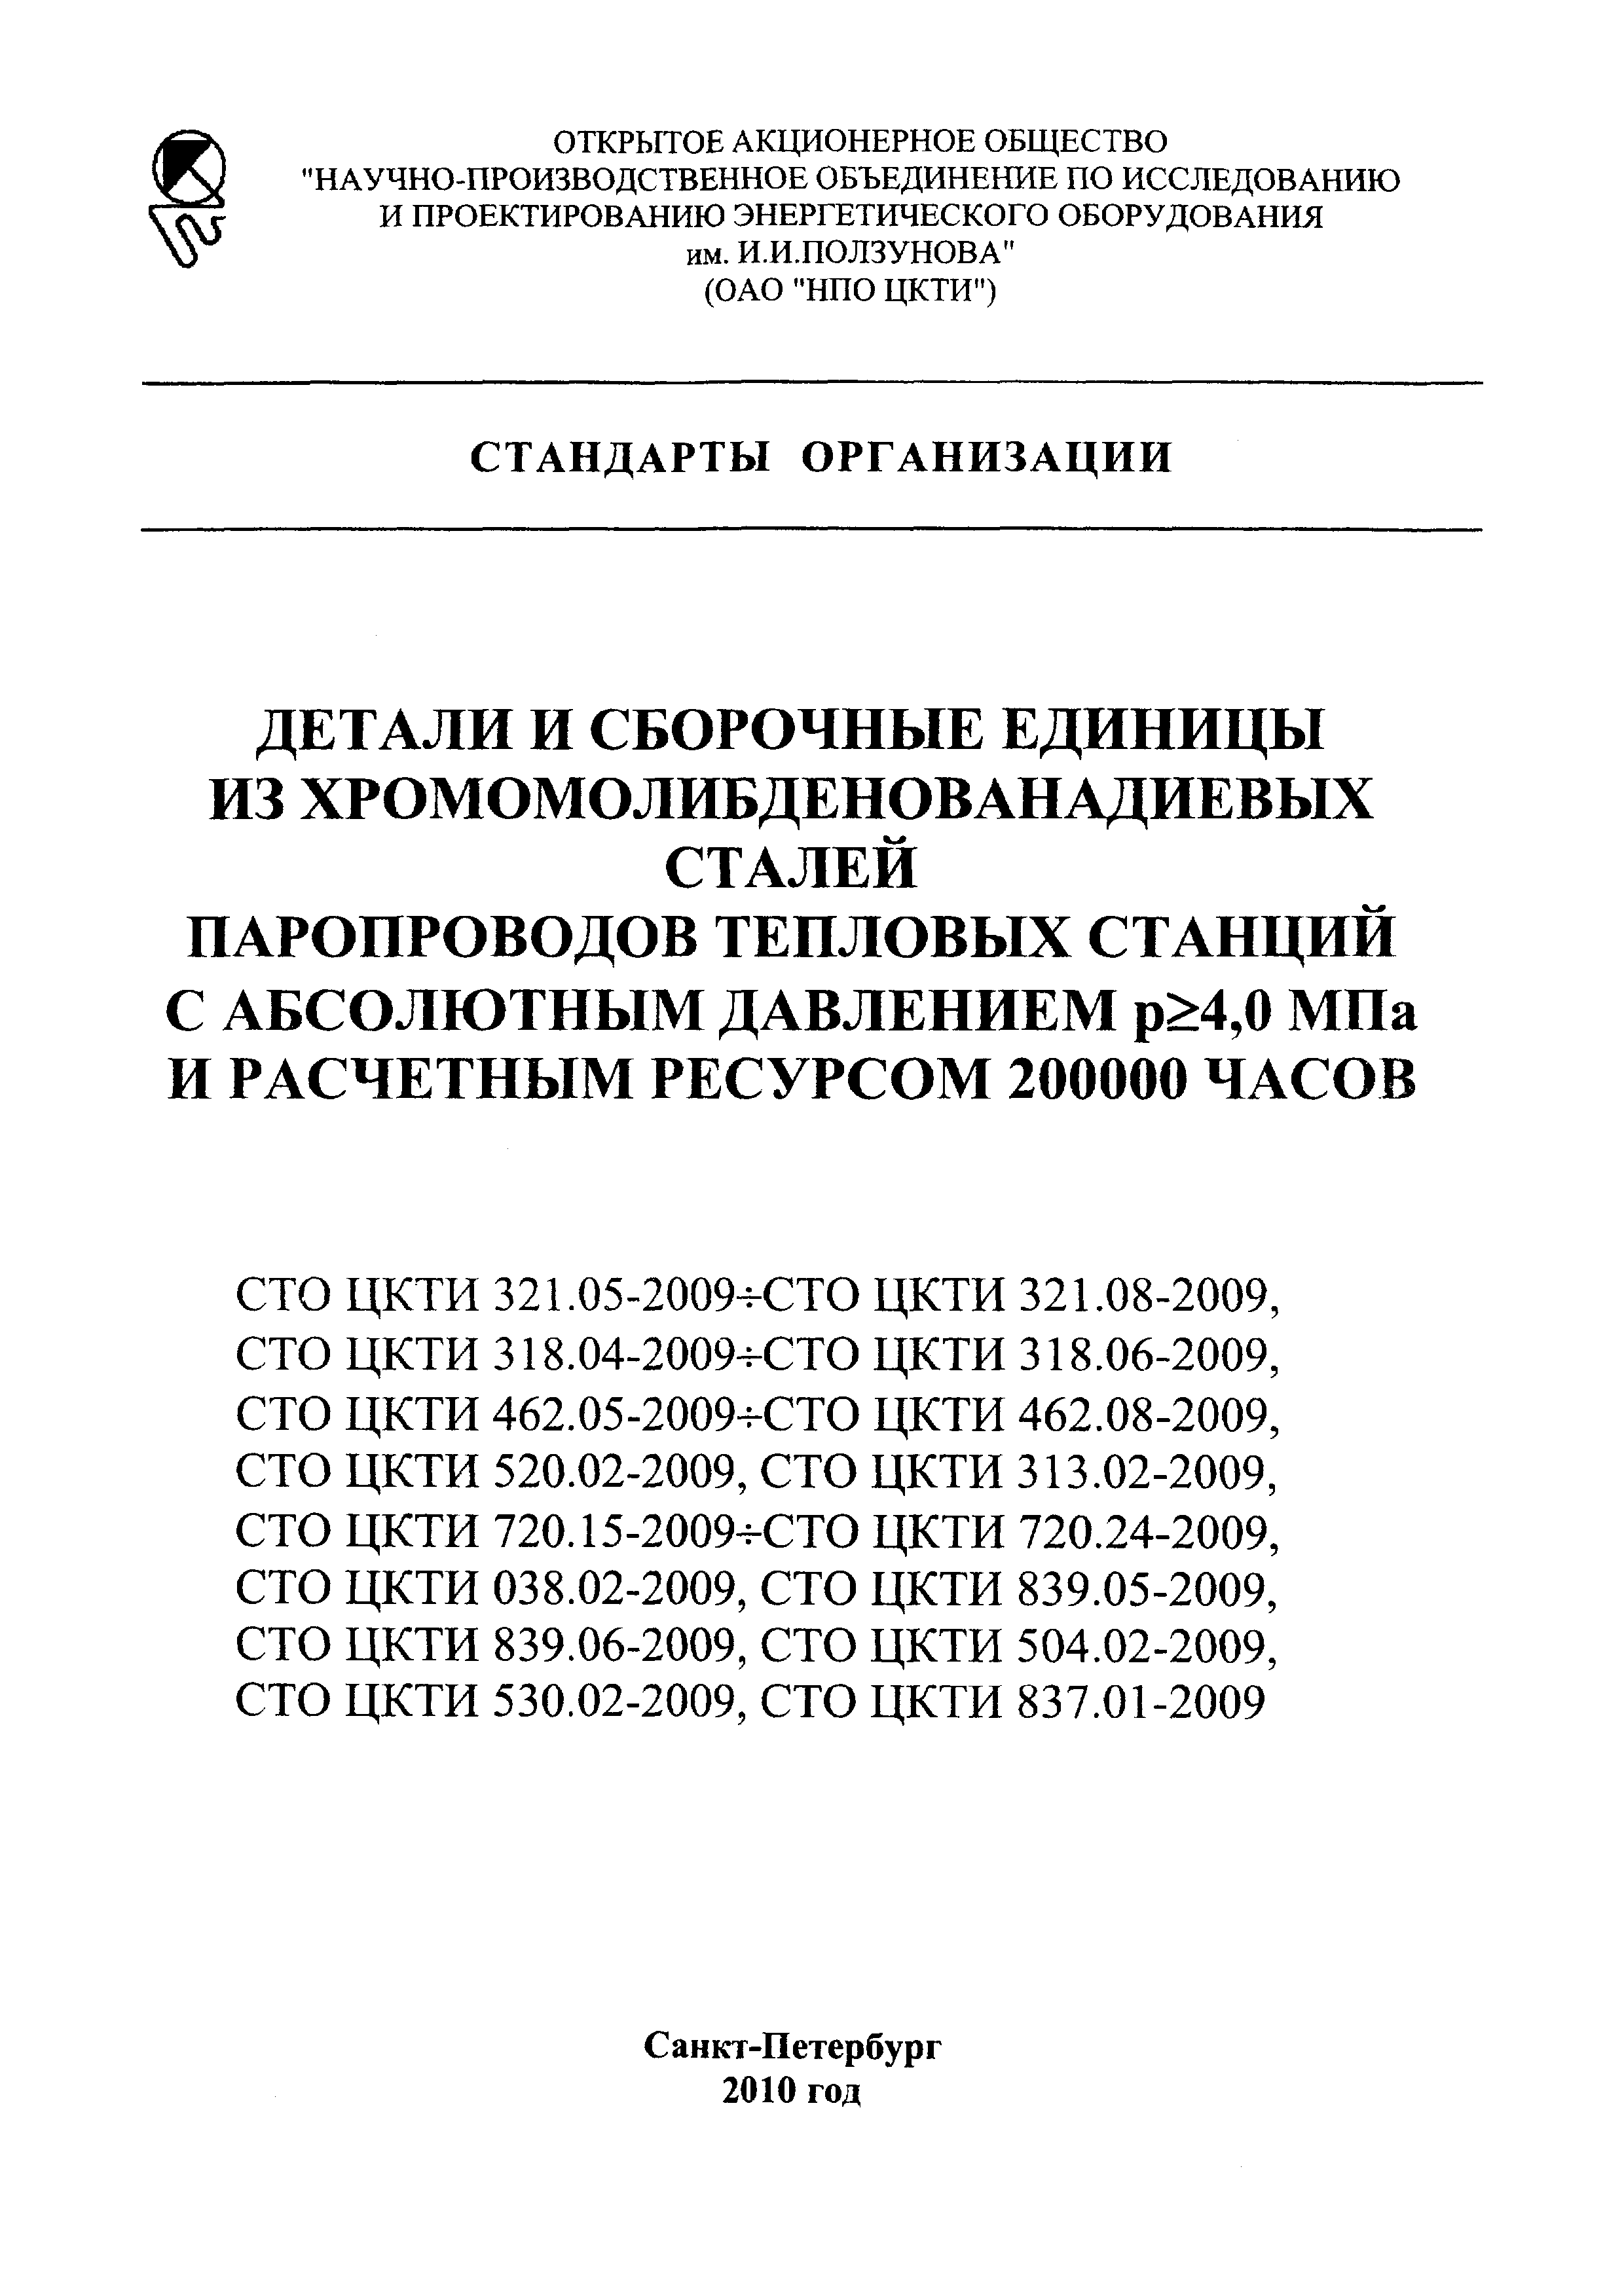 СТО ЦКТИ 837.01-2009